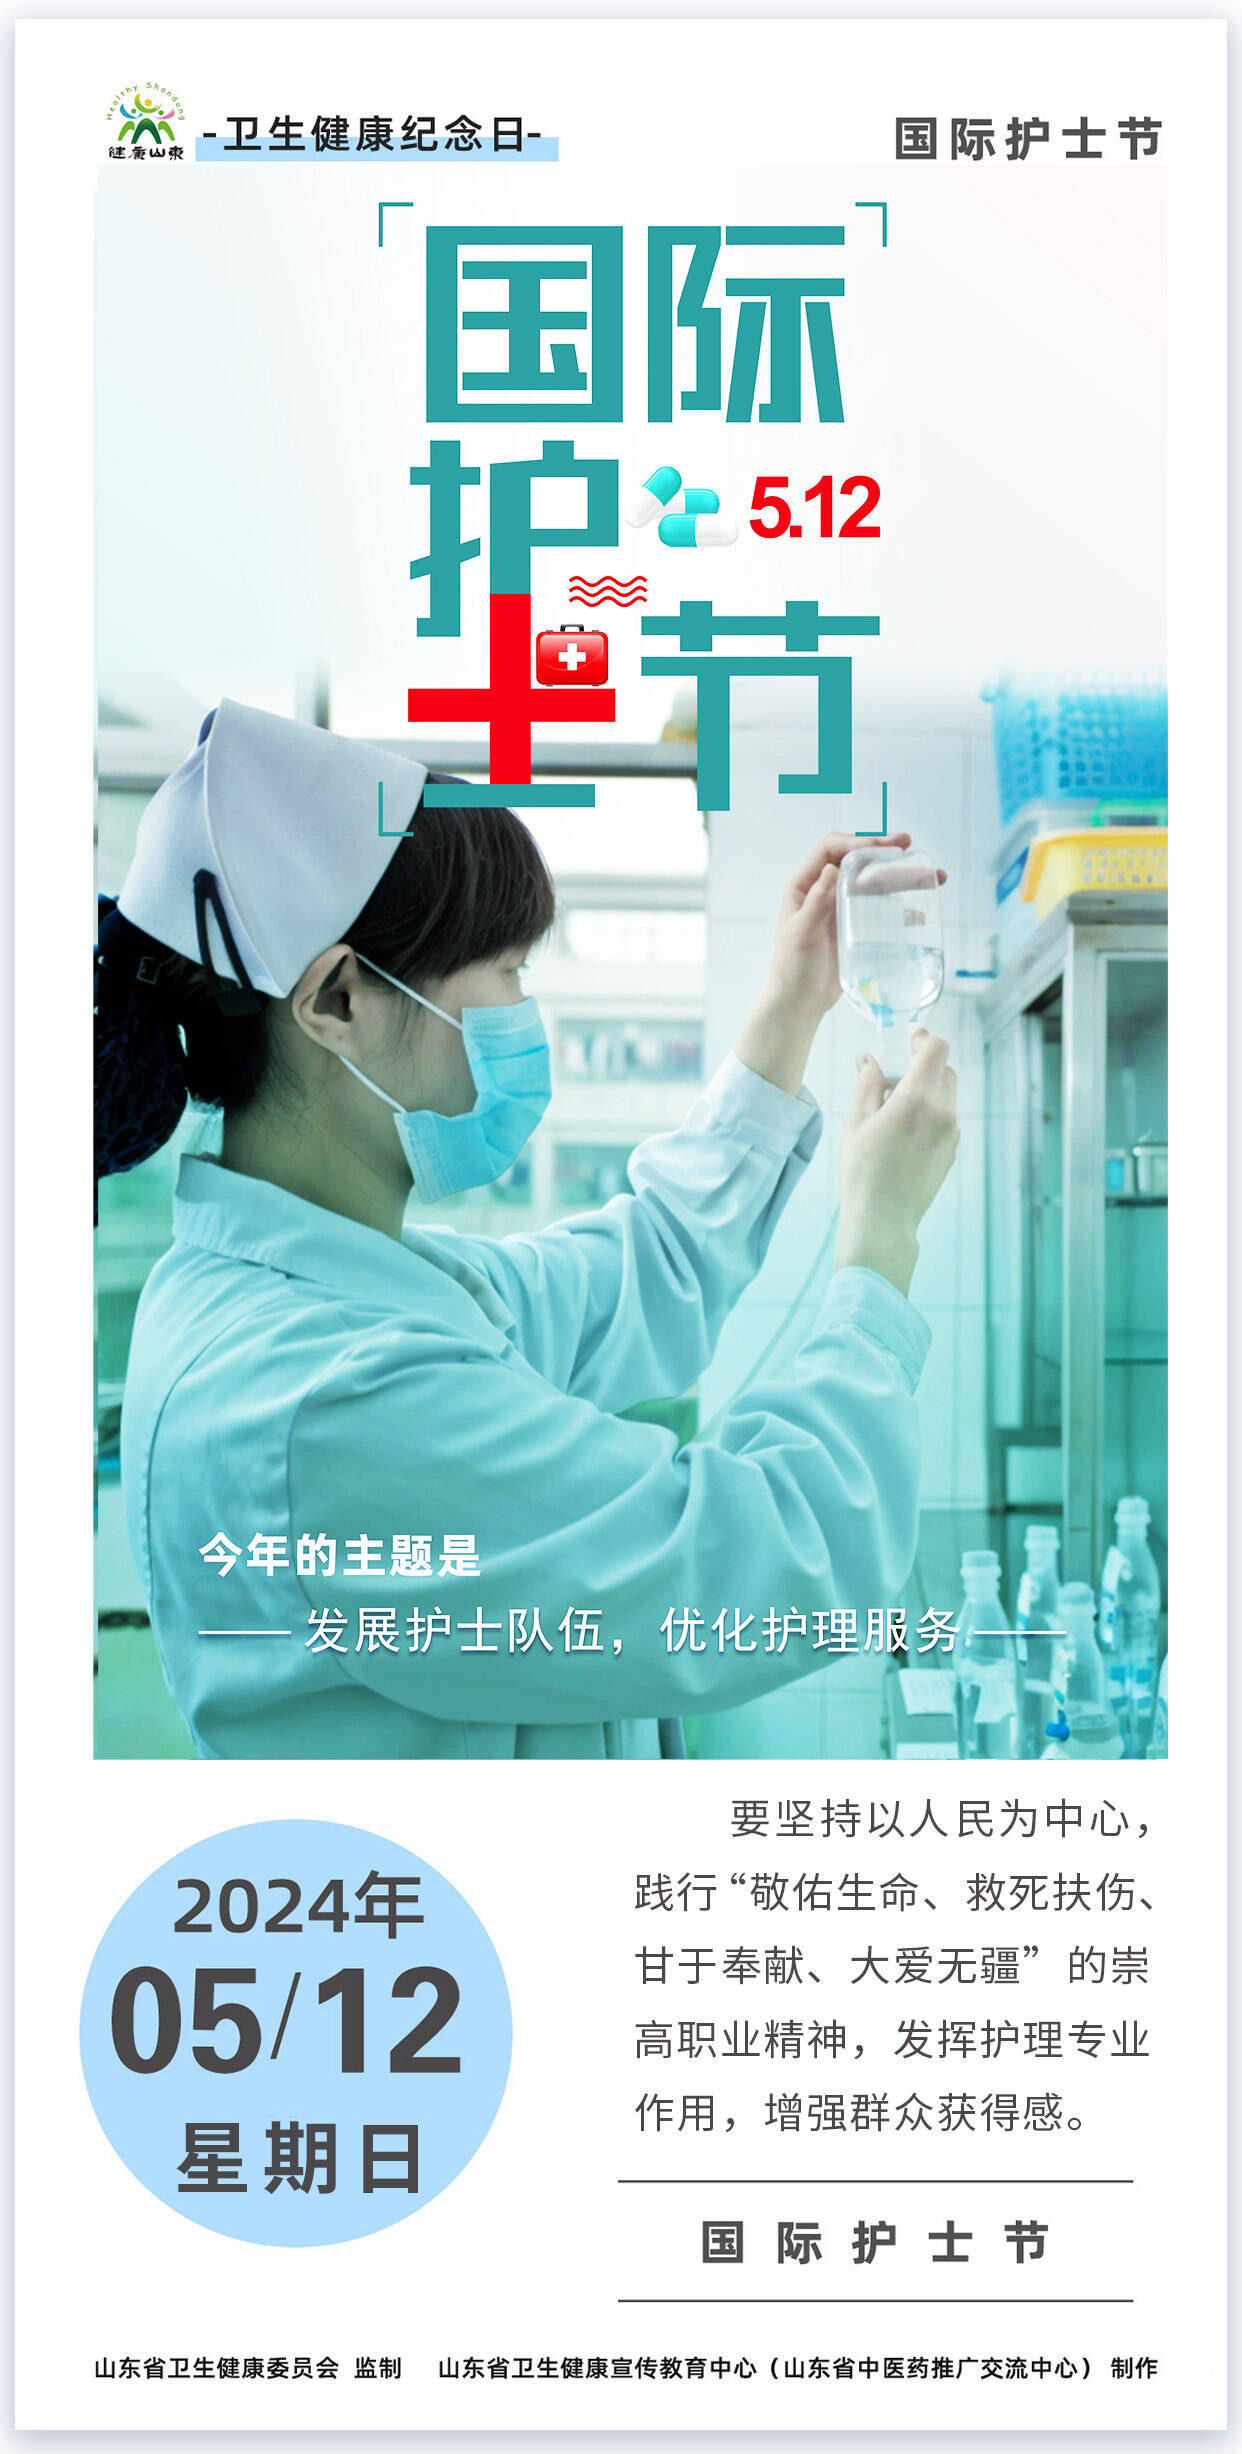 【国际护士节】发展护士队伍 优化护理服务